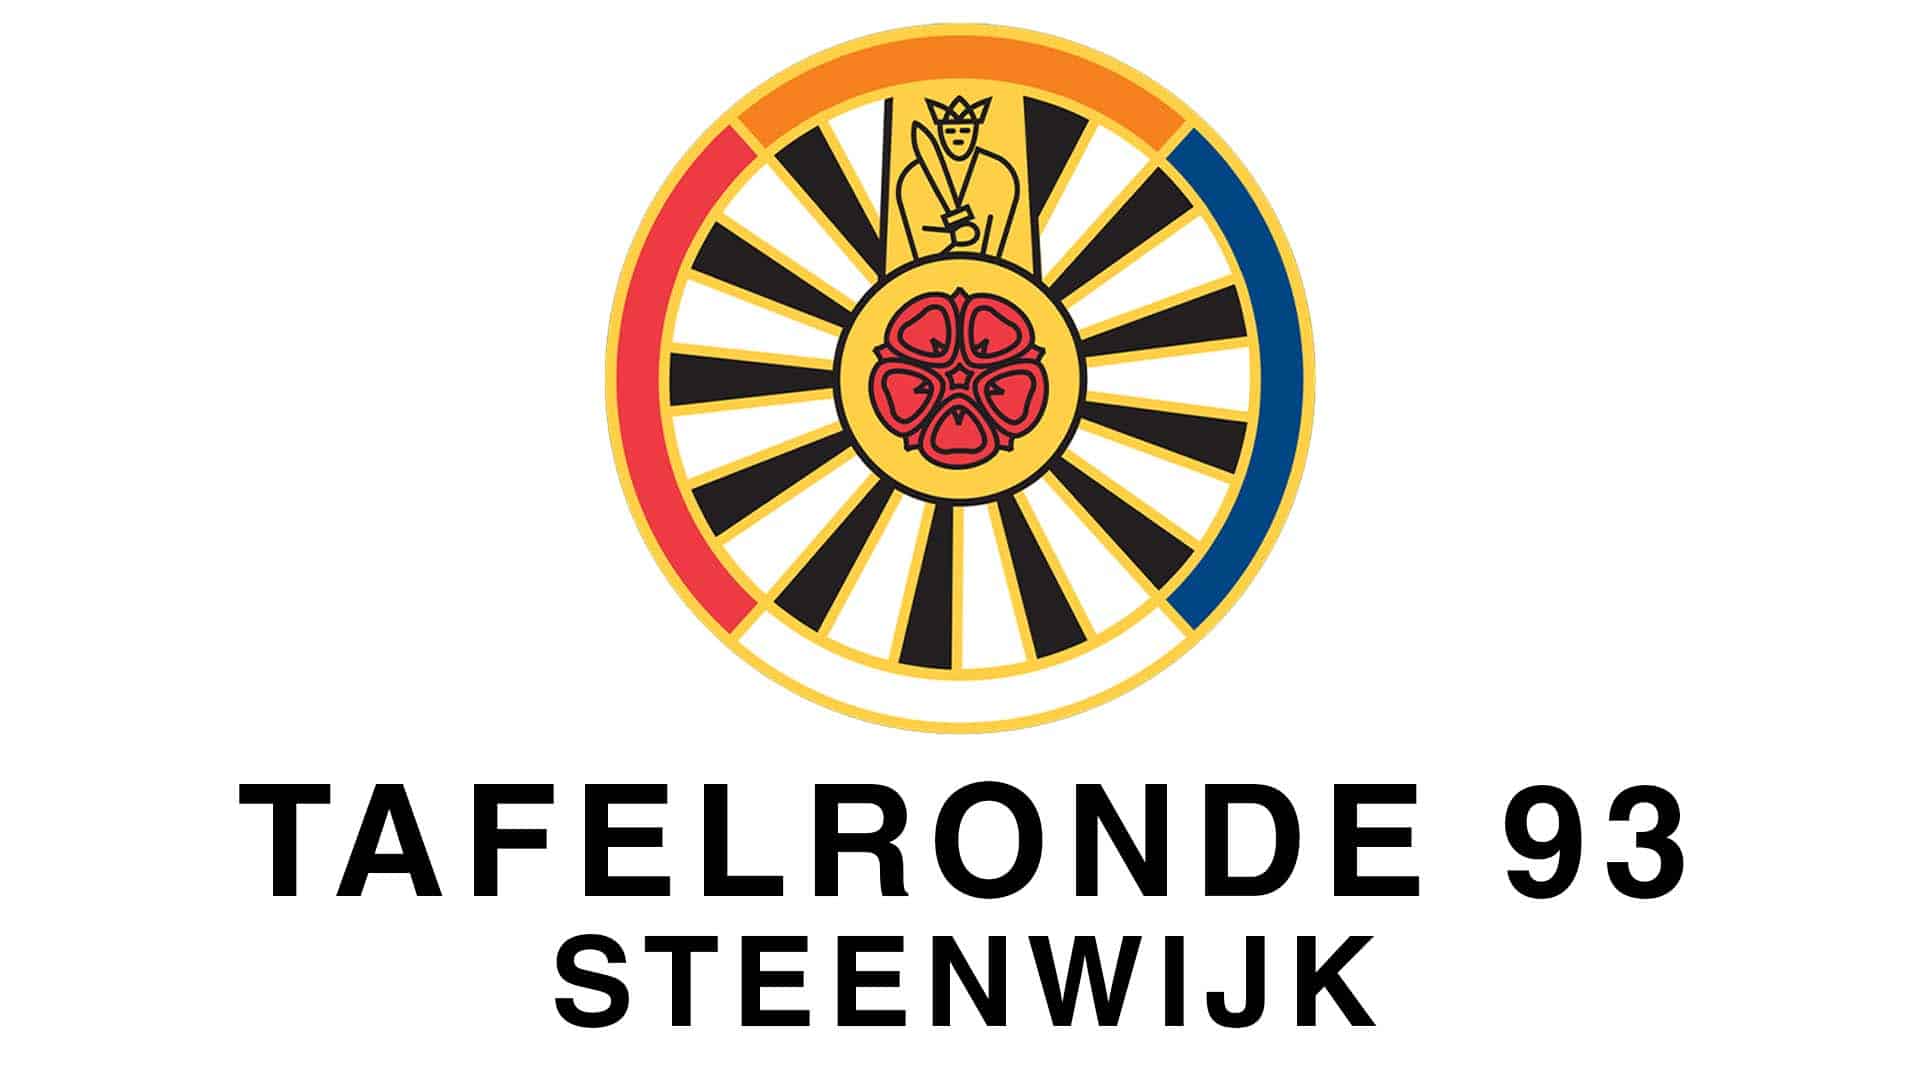 Tafelronde 93 Steenwijk